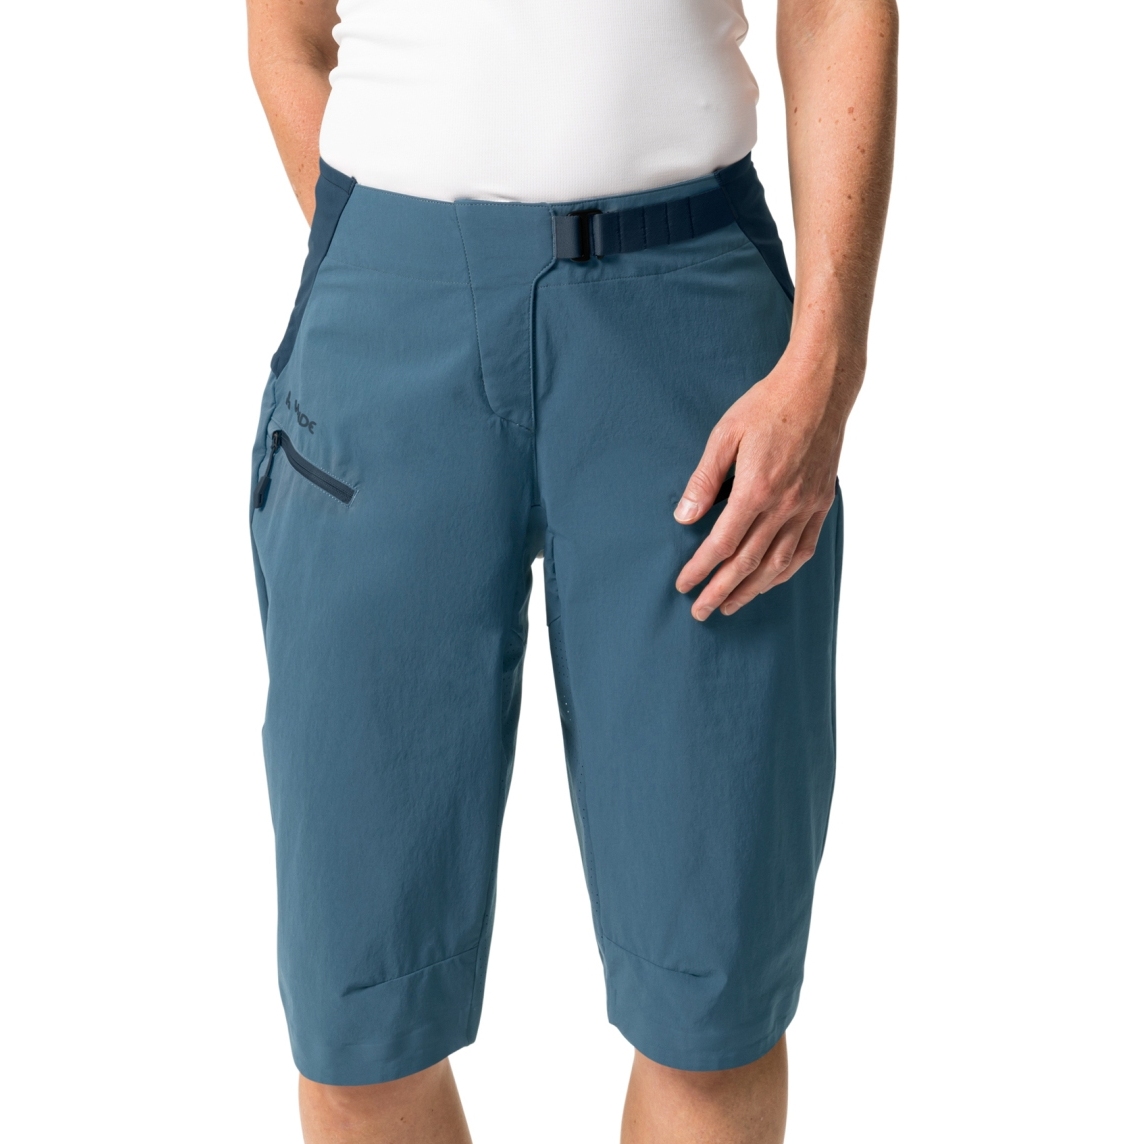 Produktbild von Vaude Moab PRO Shorts Damen - blue grey